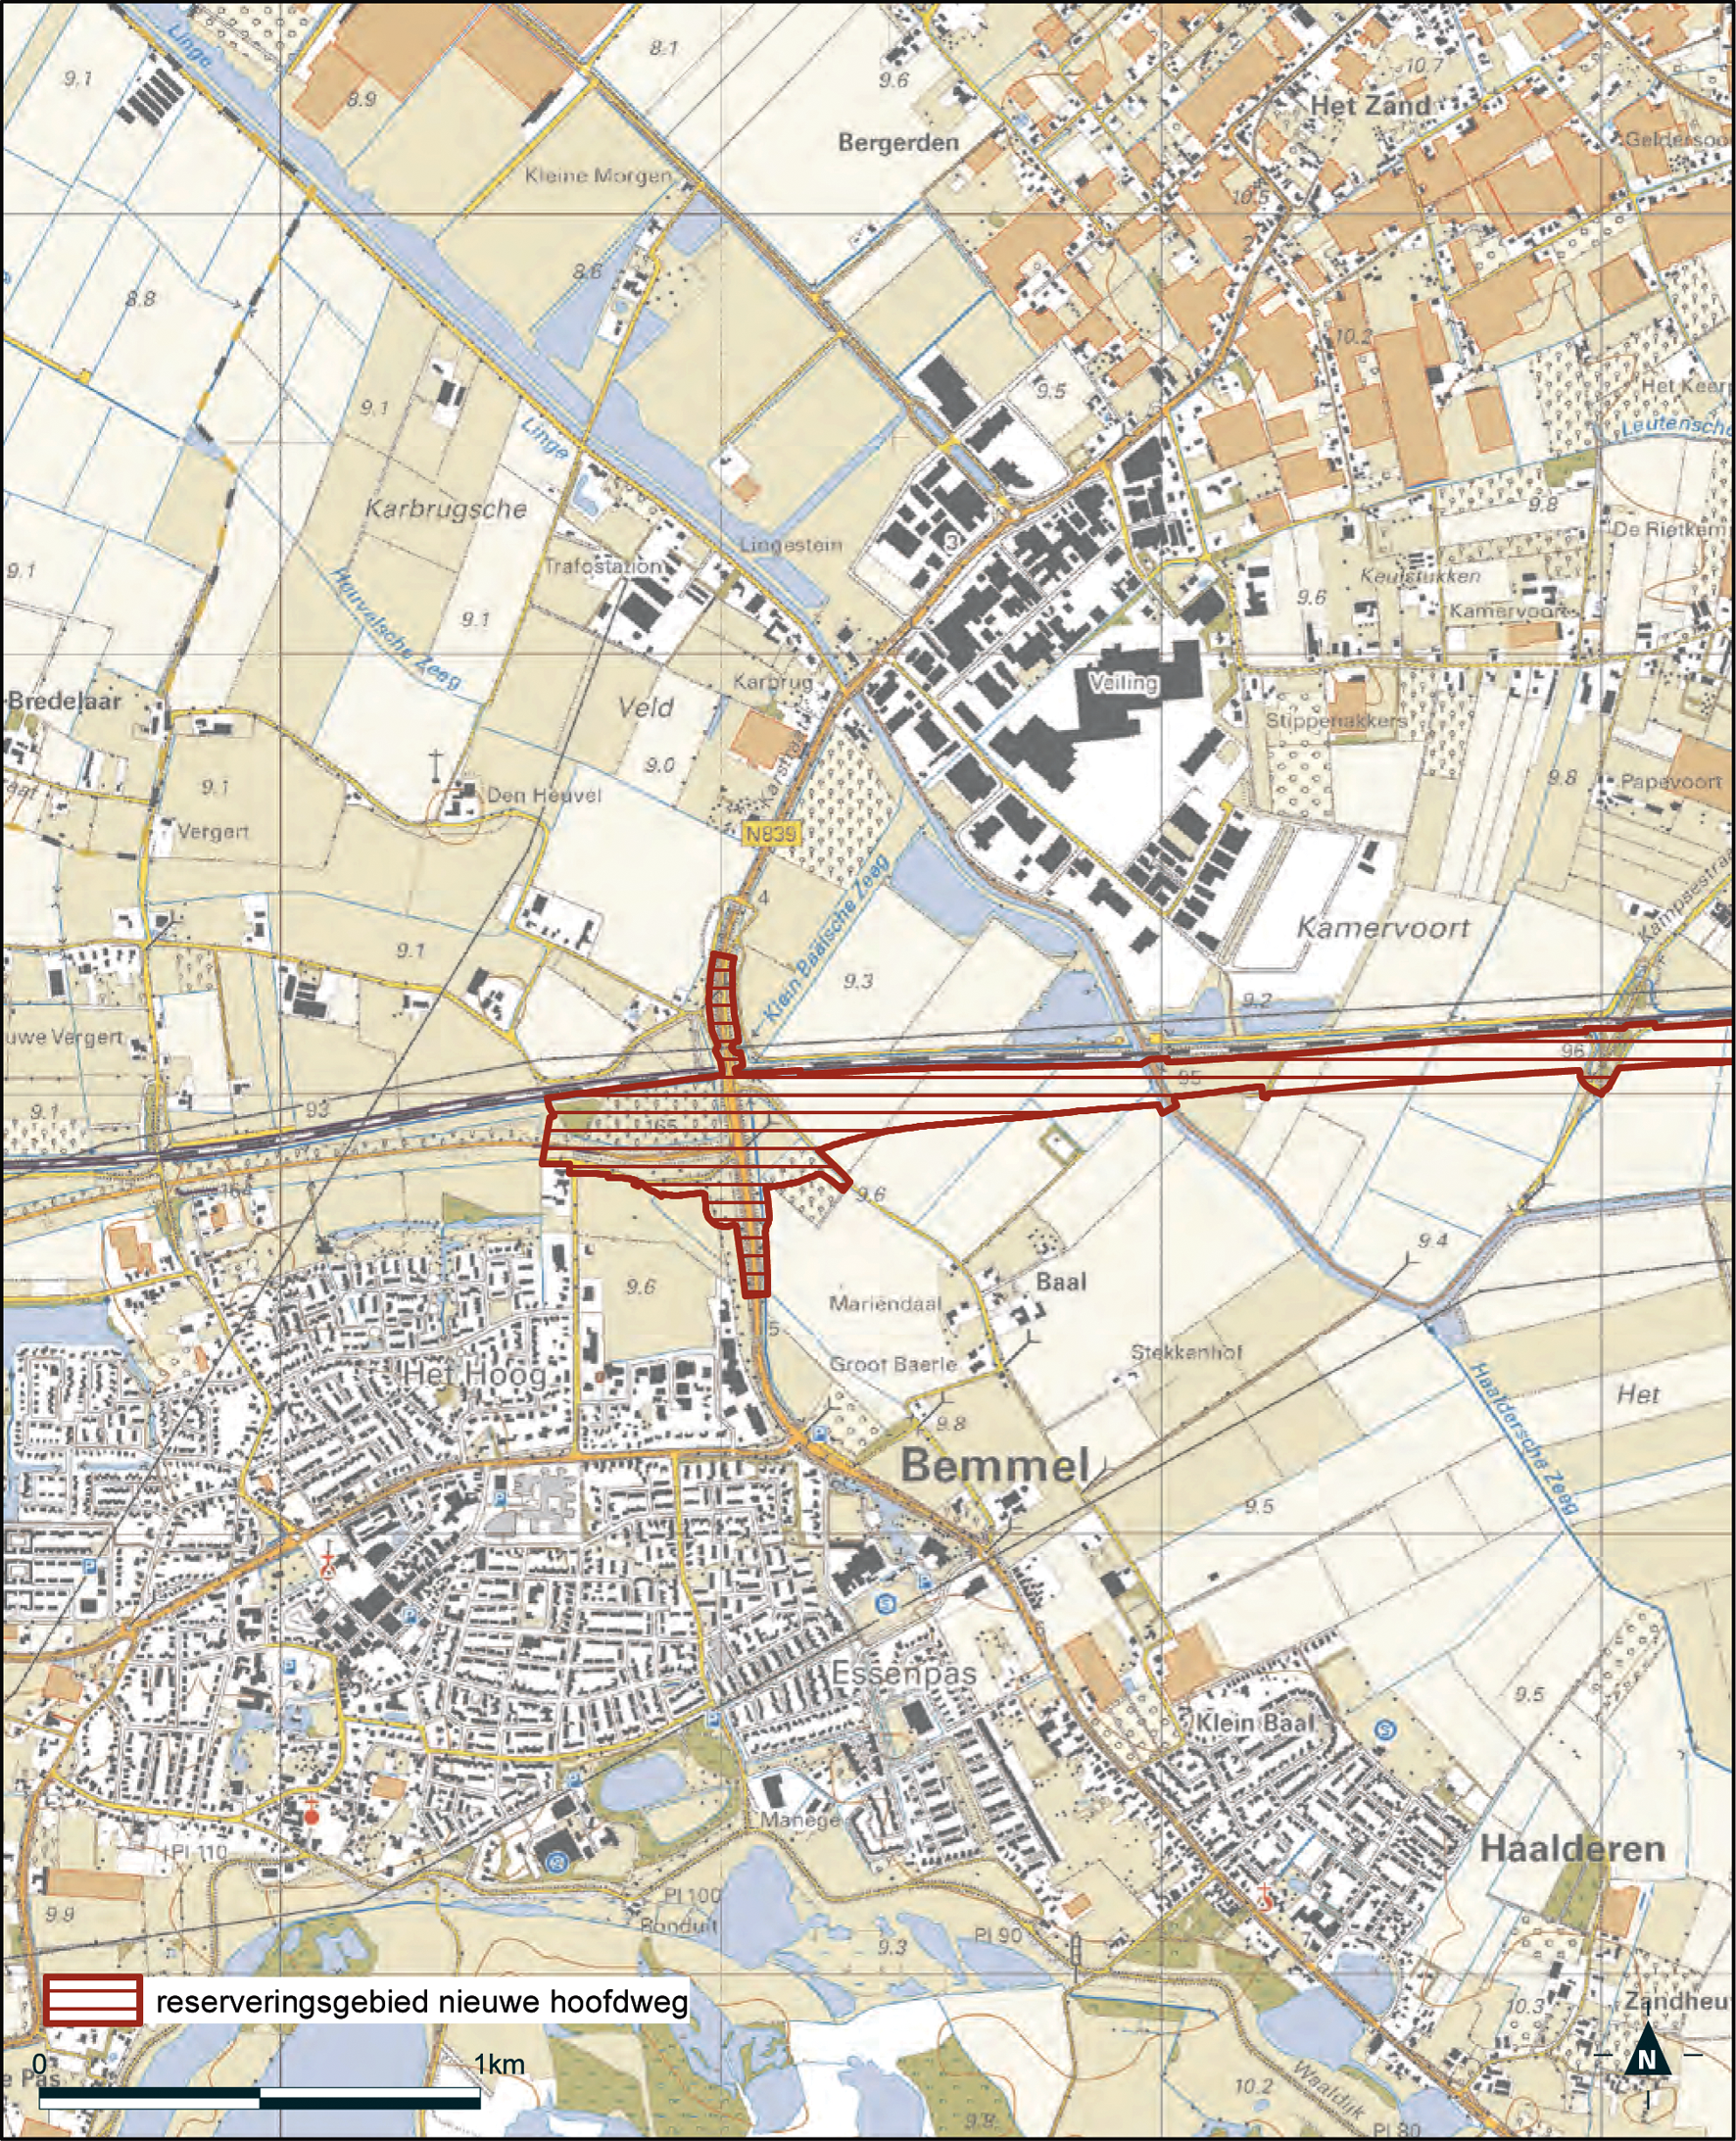 Detailkaart 1 reserveringsgebied nieuwe hoofdweg Ressen – Oudbroeken A12/A15 (ViA15)